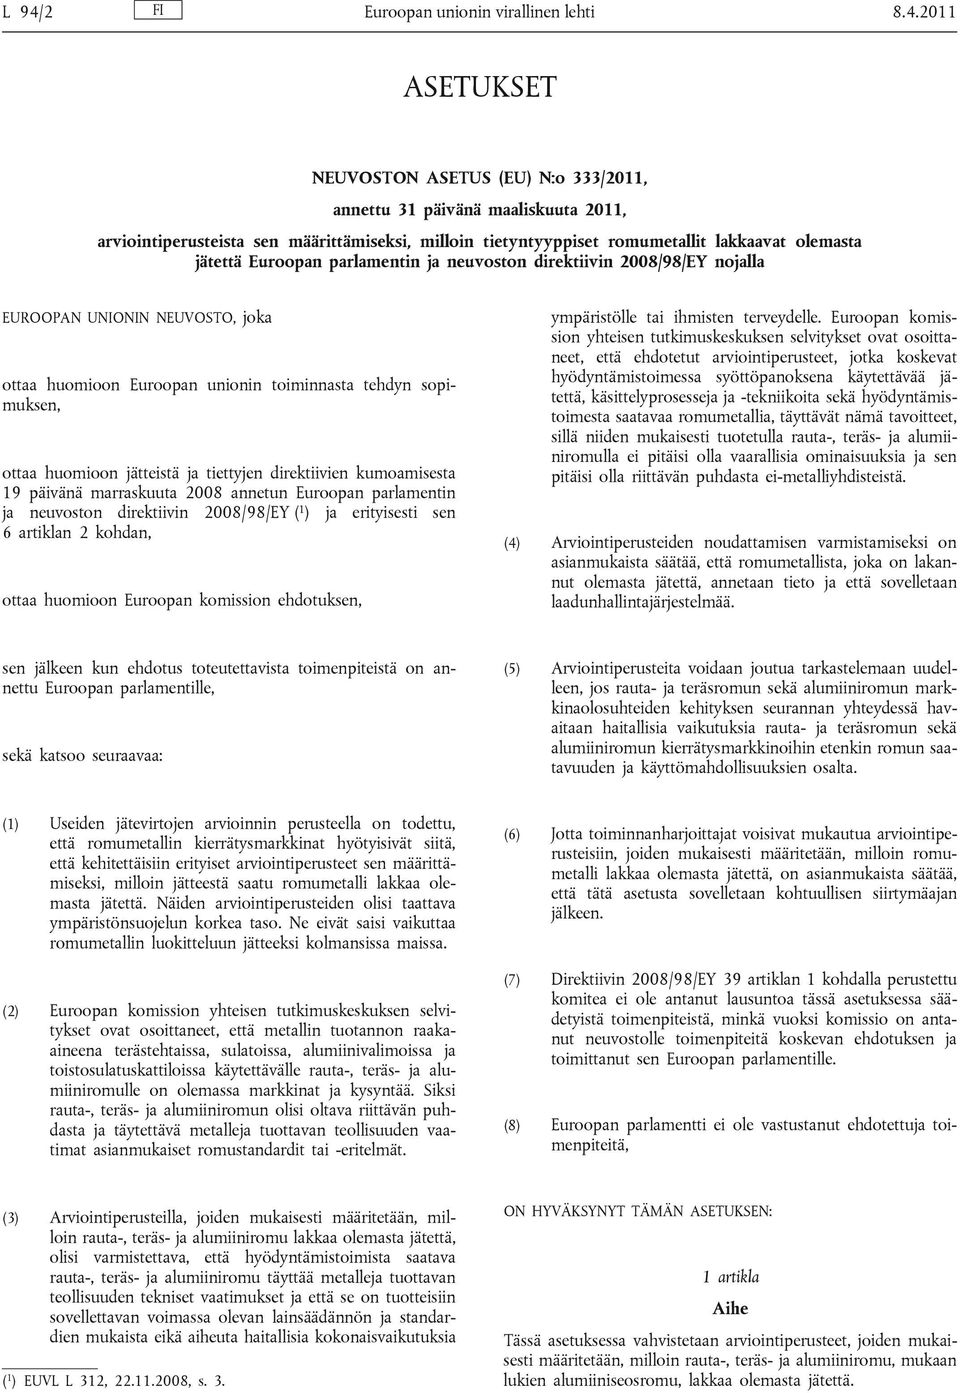 2011 ASETUKSET NEUVOSTON ASETUS (EU) N:o 333/2011, annettu 31 päivänä maaliskuuta 2011, arviointiperusteista sen määrittämiseksi, milloin tietyntyyppiset romumetallit lakkaavat olemasta jätettä